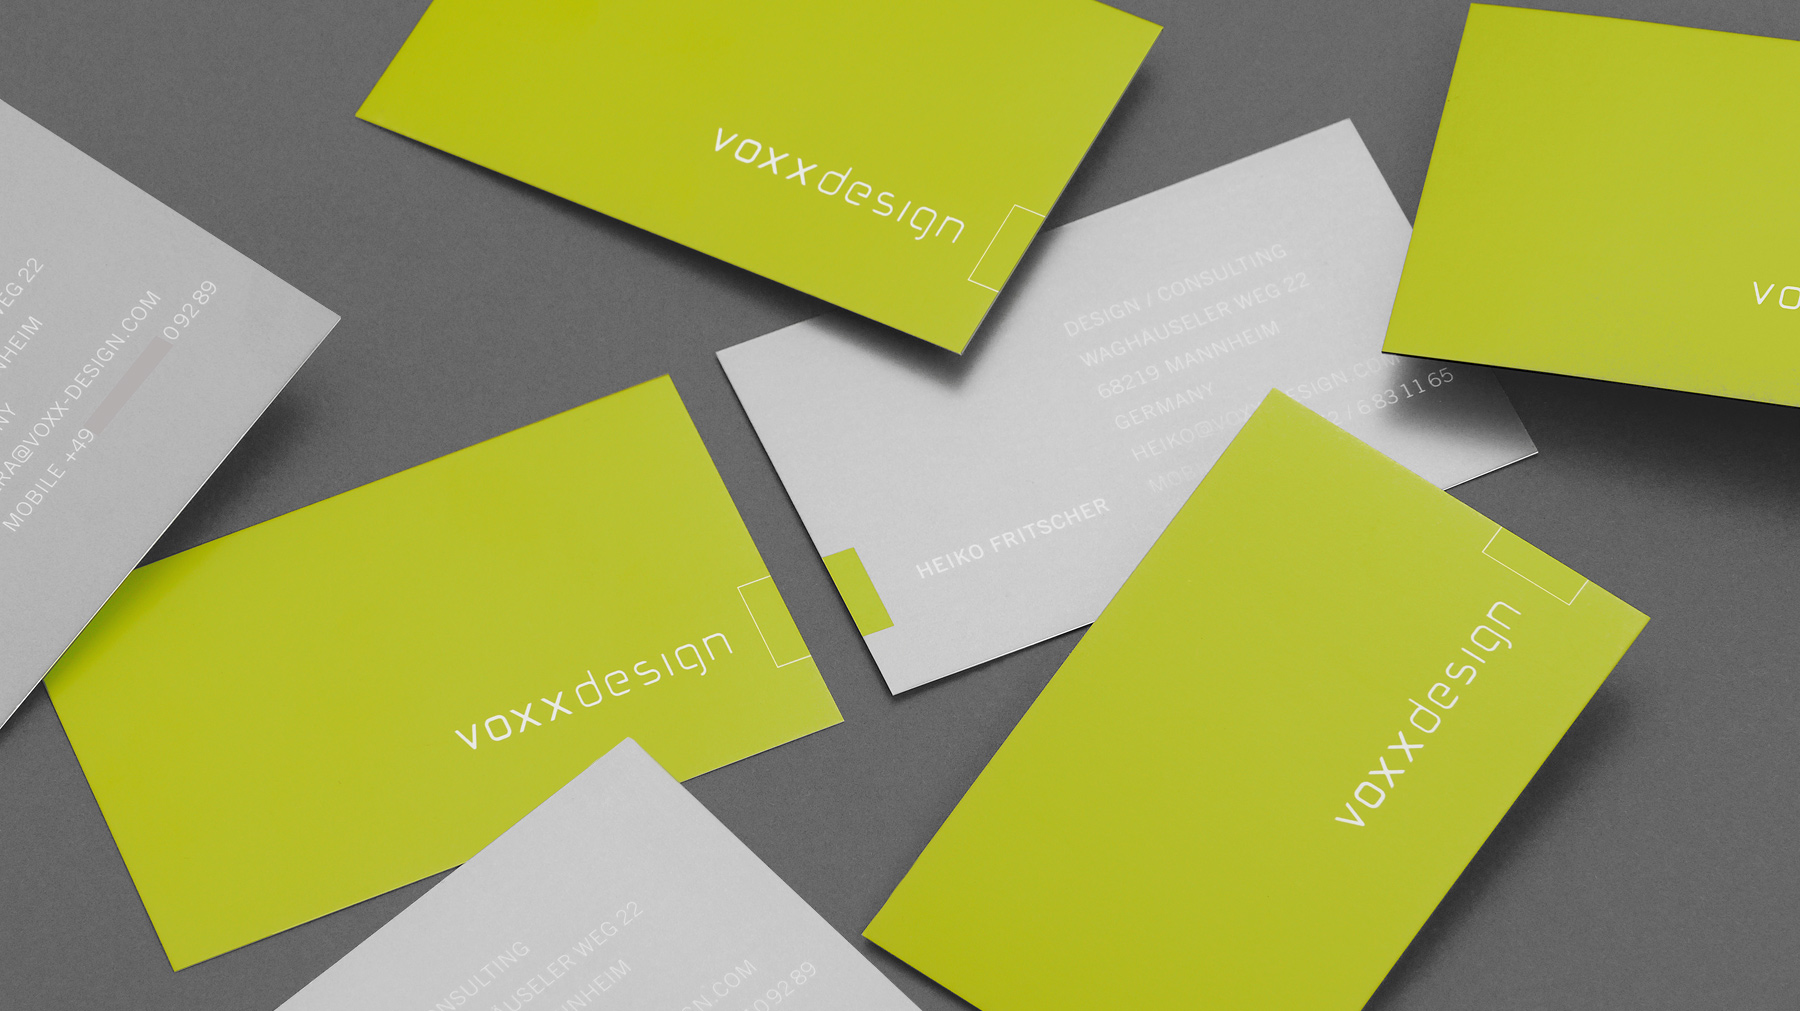 Visitenkarten Design für voxx design | Mannheim | by Ilyas Susever